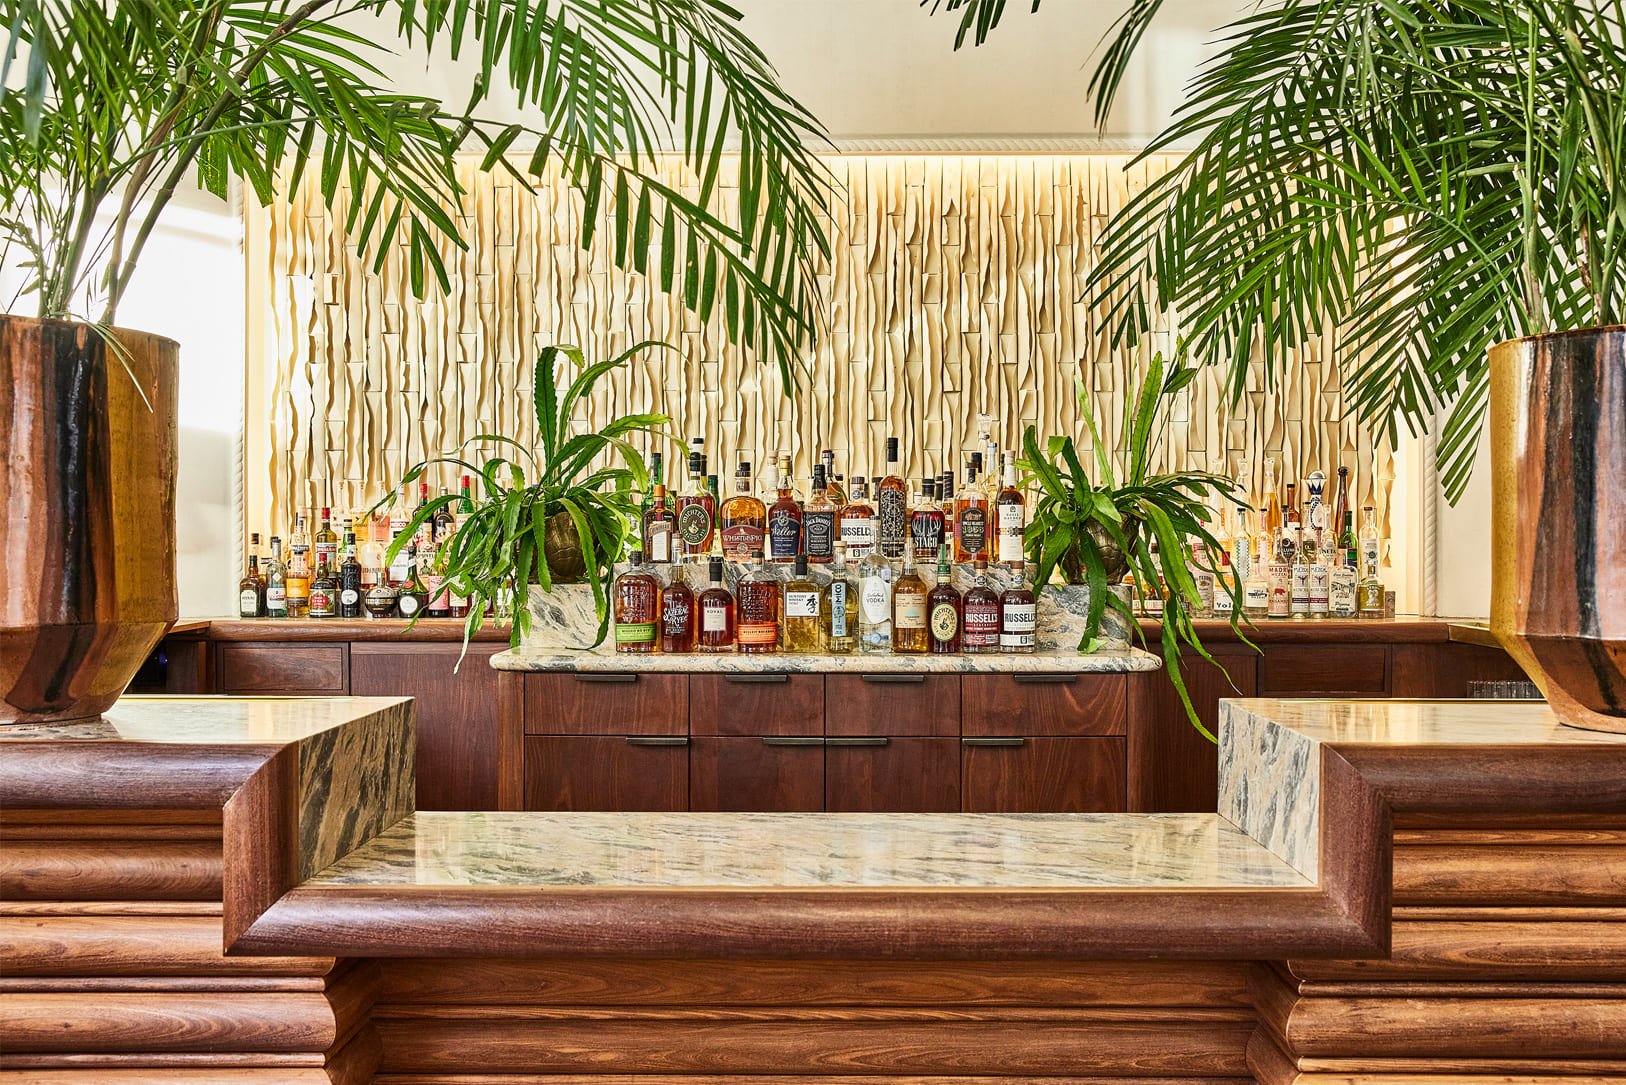 Palma Lounge Bar